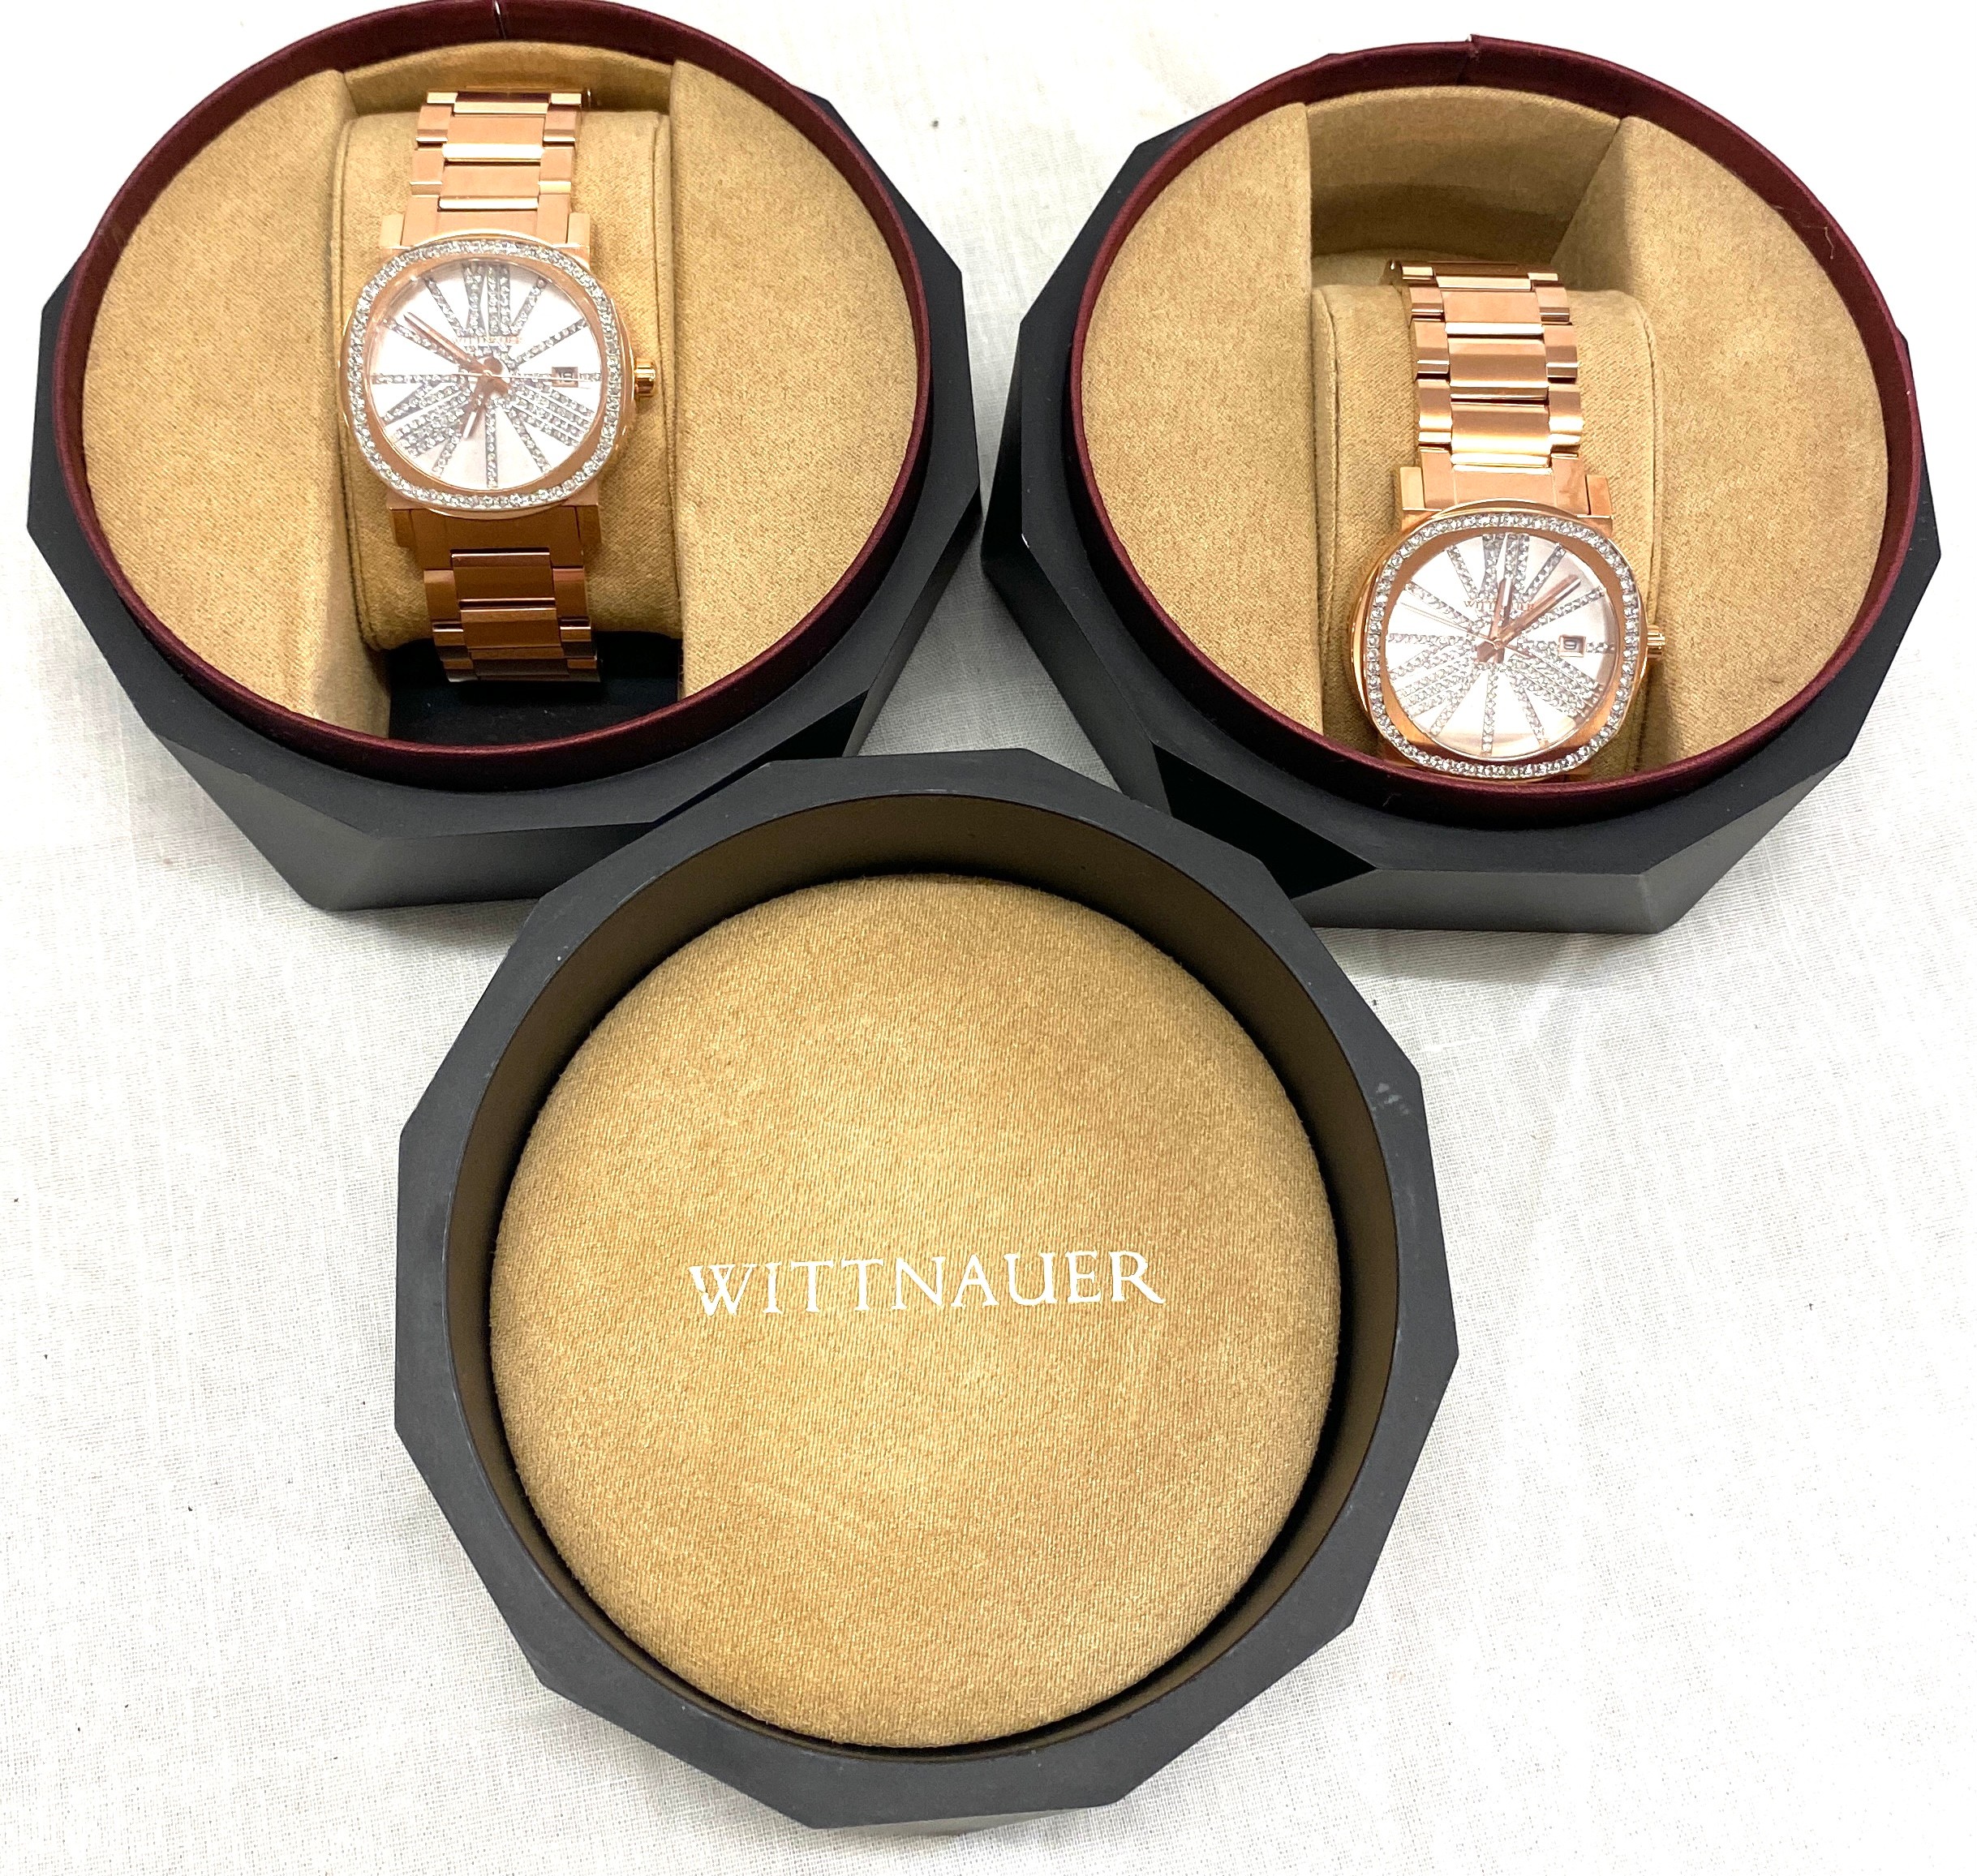 2 Wittnauer ladies wristwatches